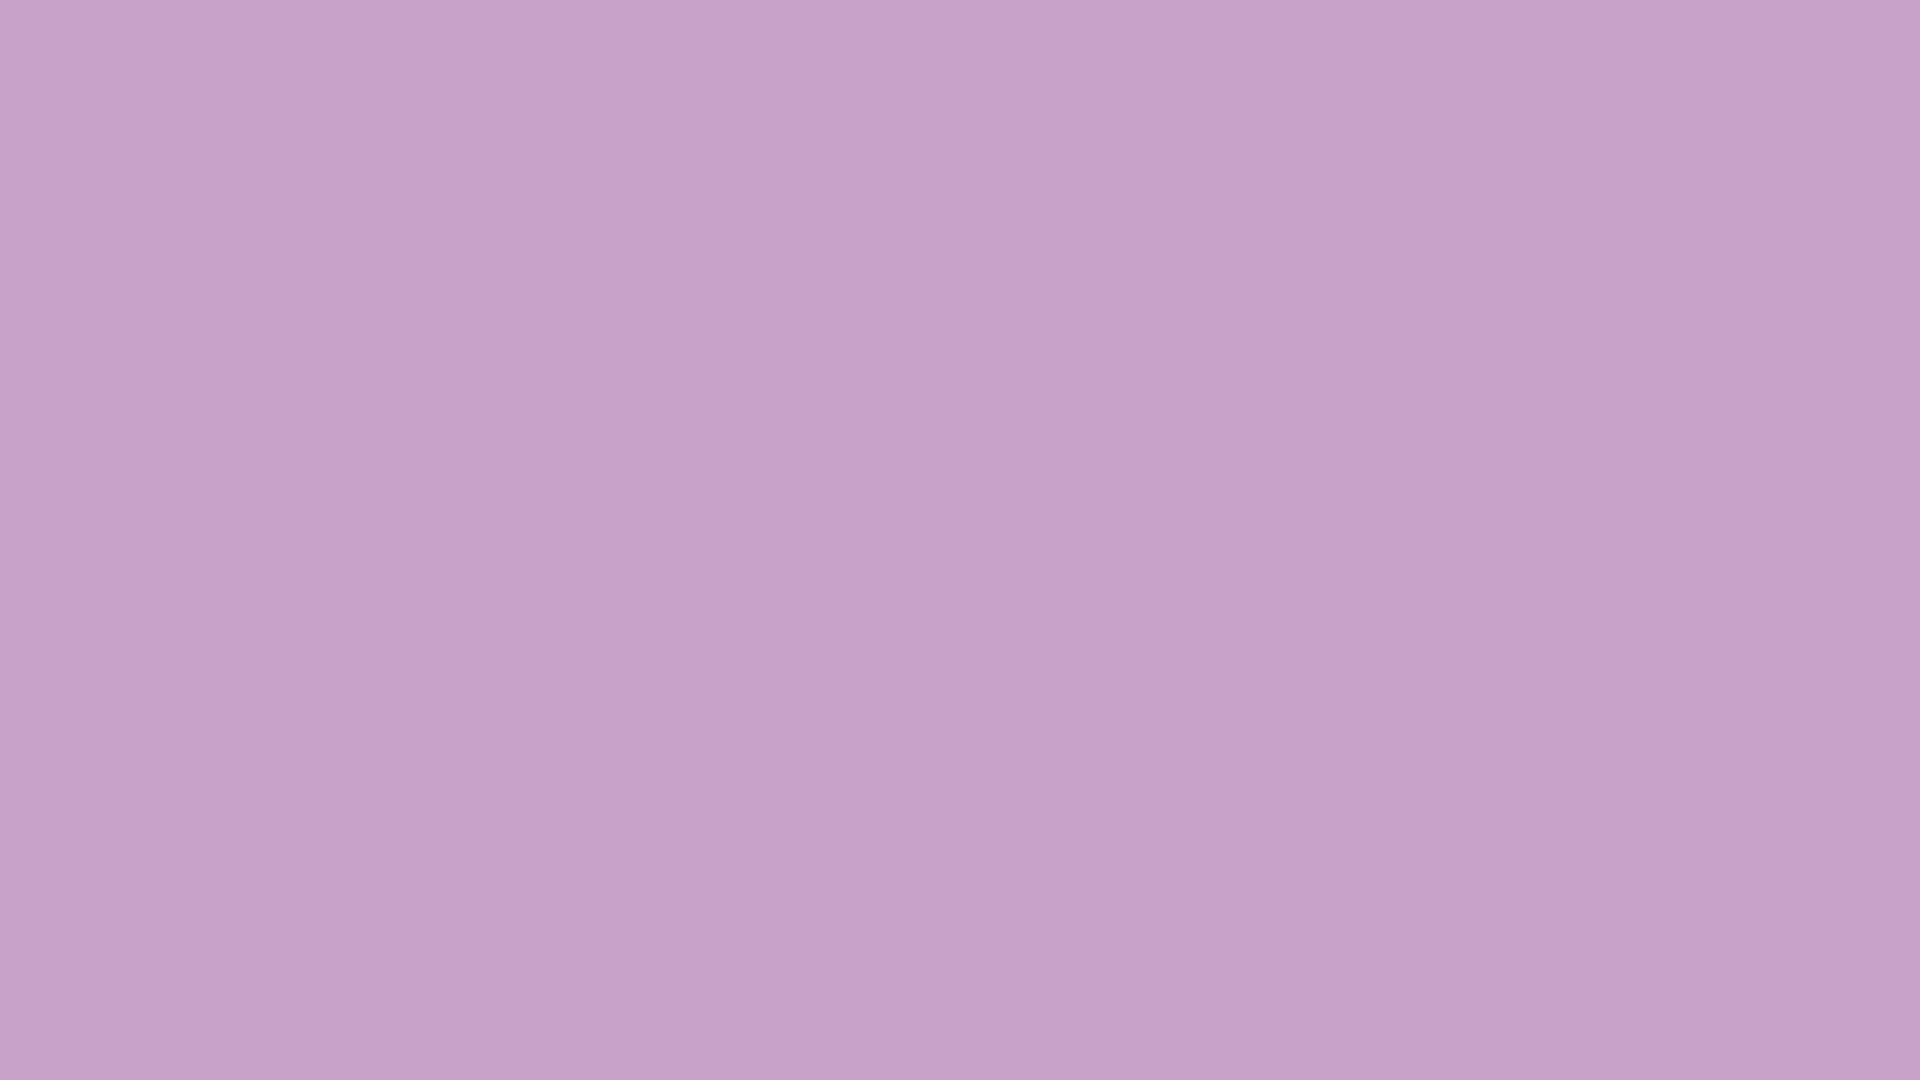 bordure de papier peint de couleur unie,rose,violet,violet,lilas,lavande